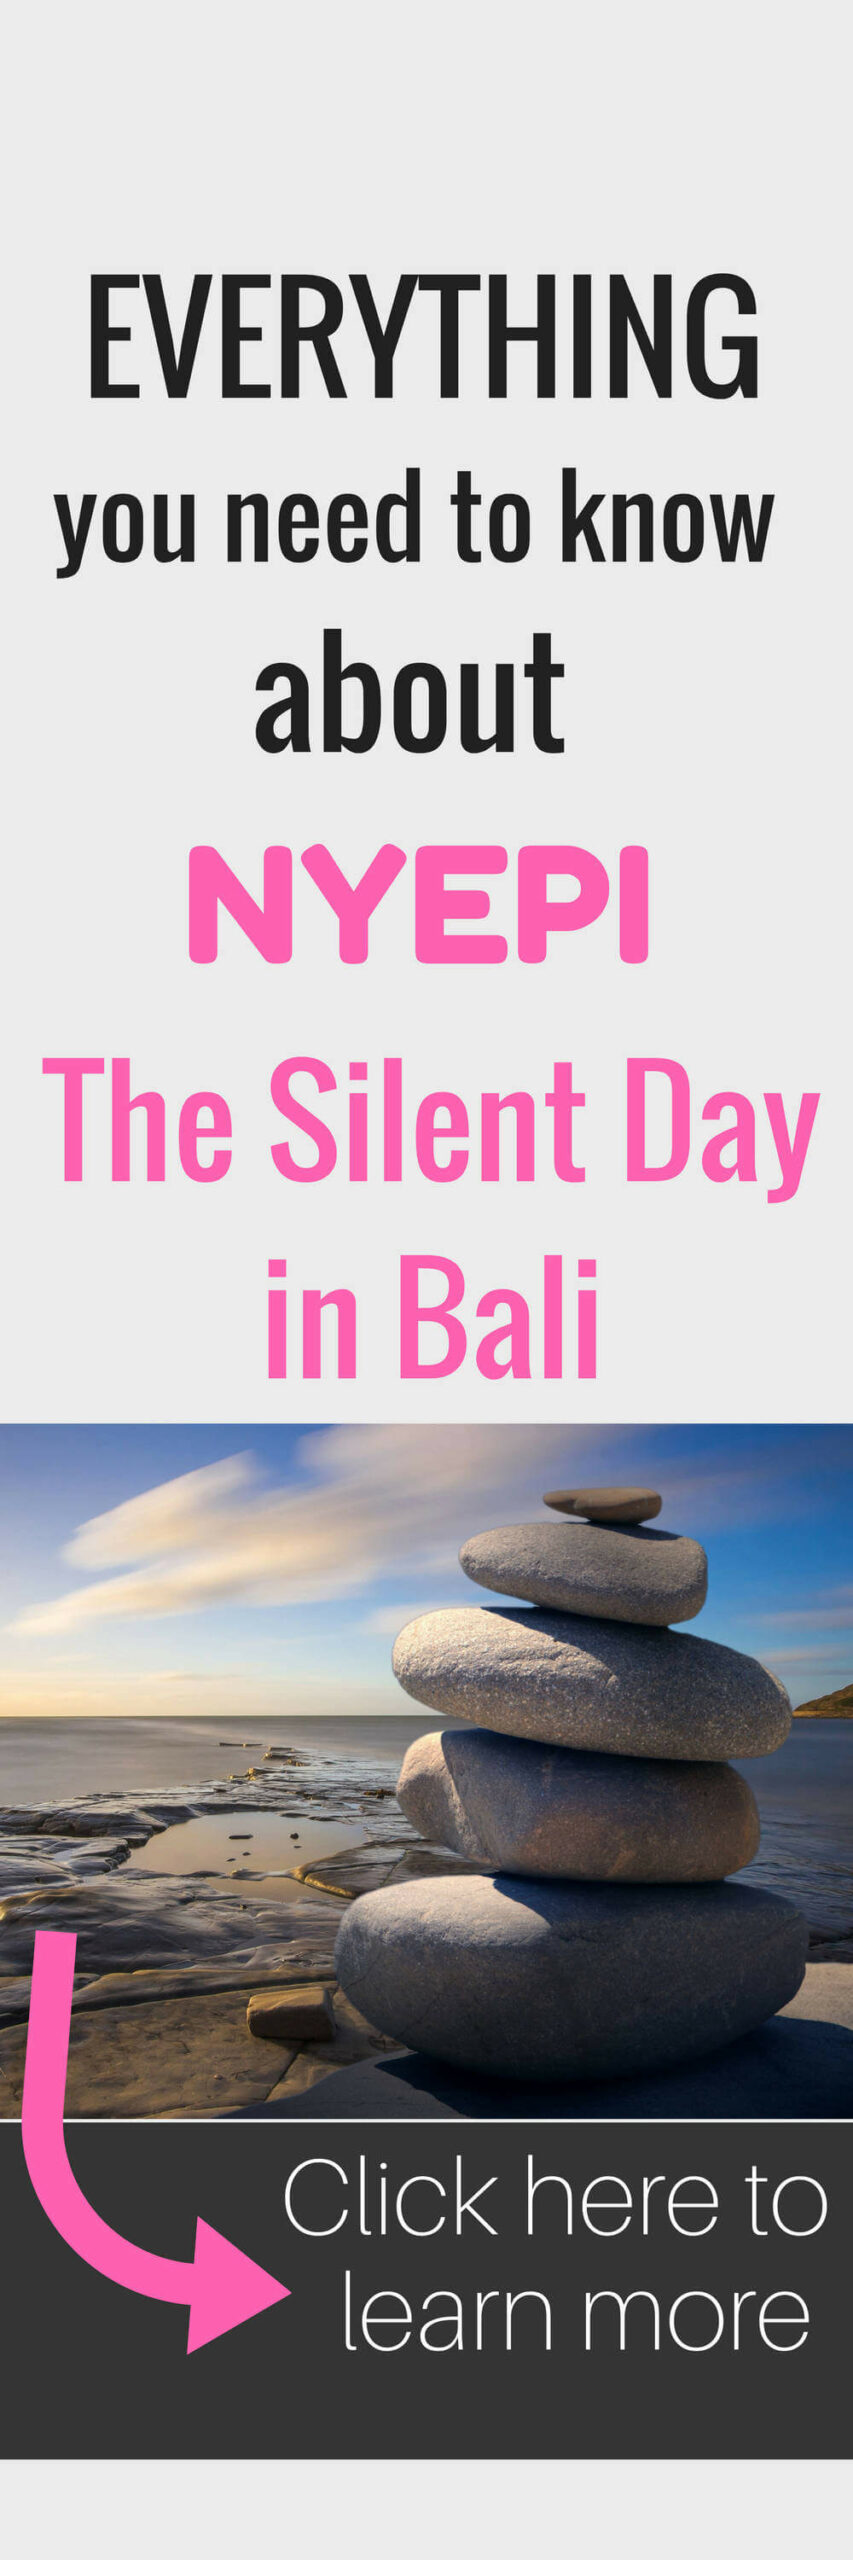 Nyepi - Dia Silencioso De Bali